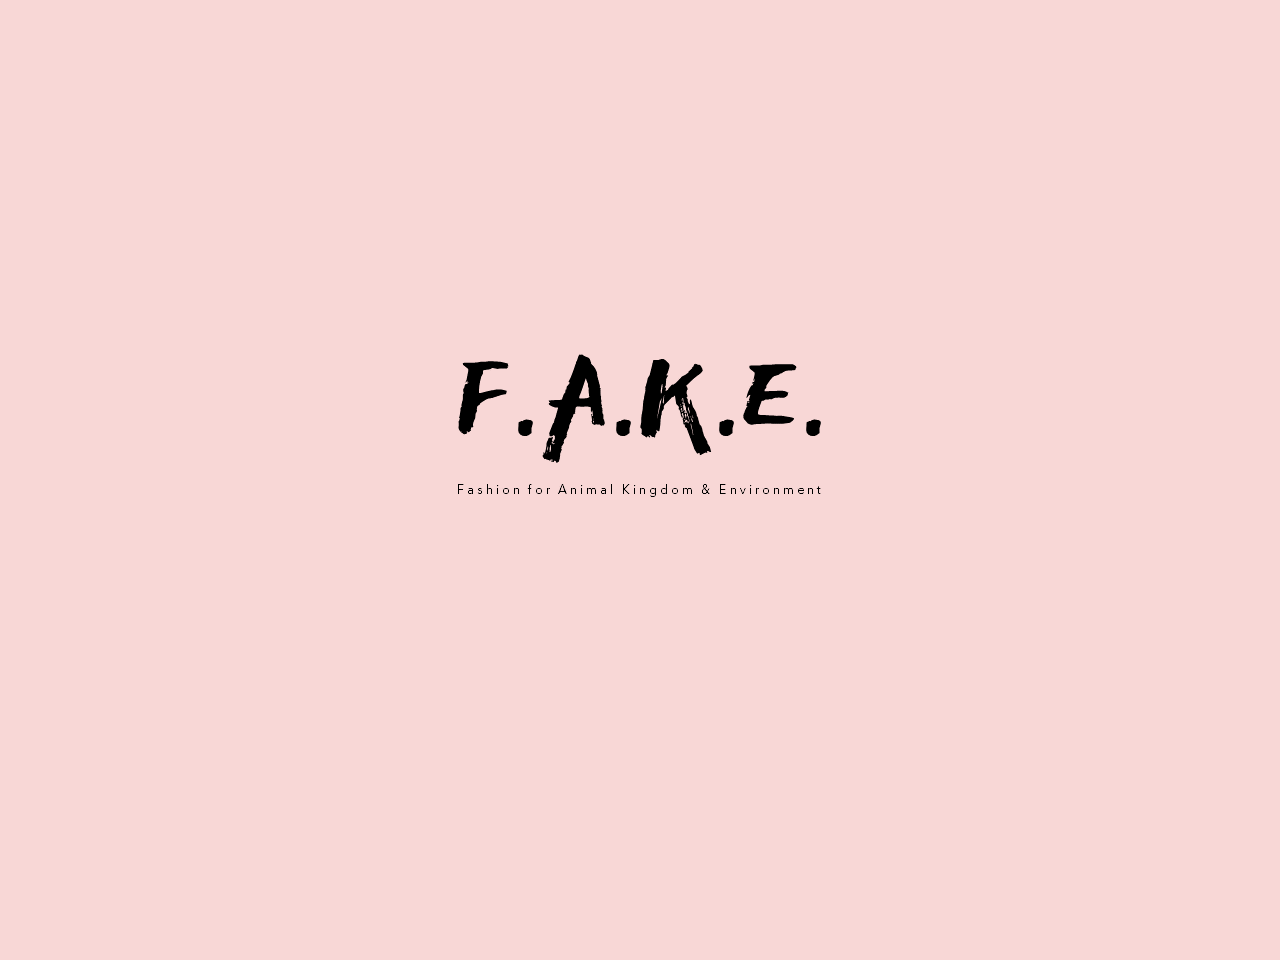 Fake 